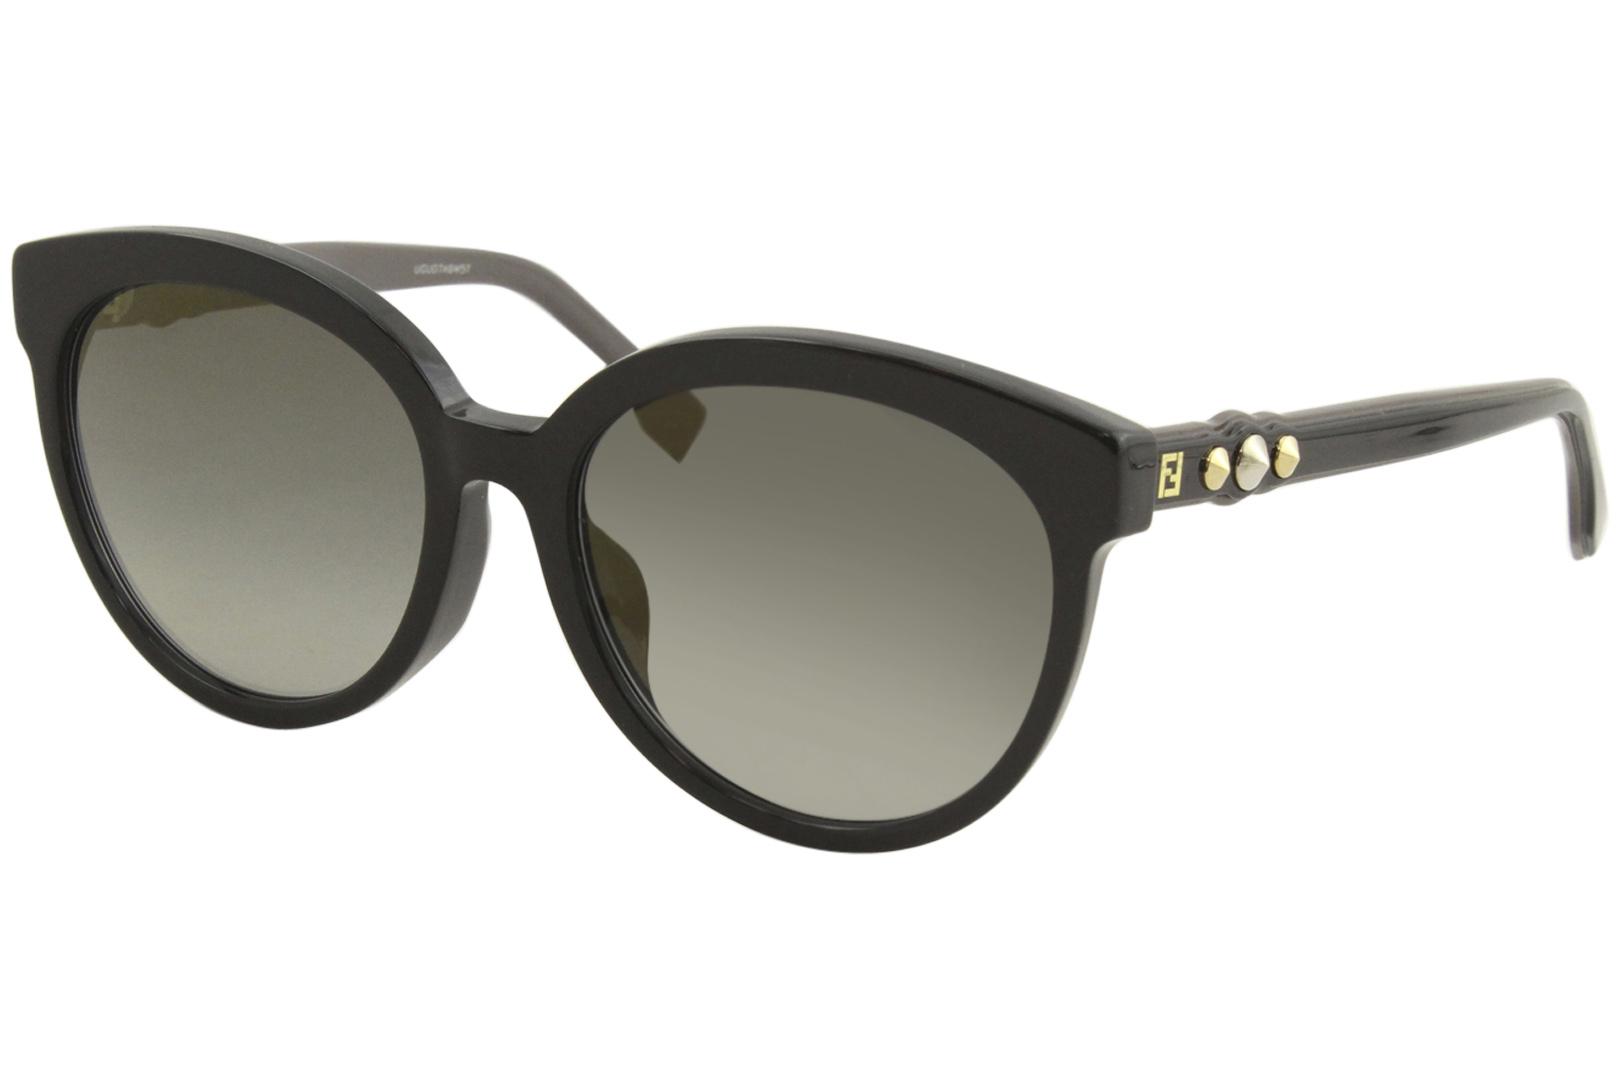 Fendi Cat-eye Frame Sunglasses in Black